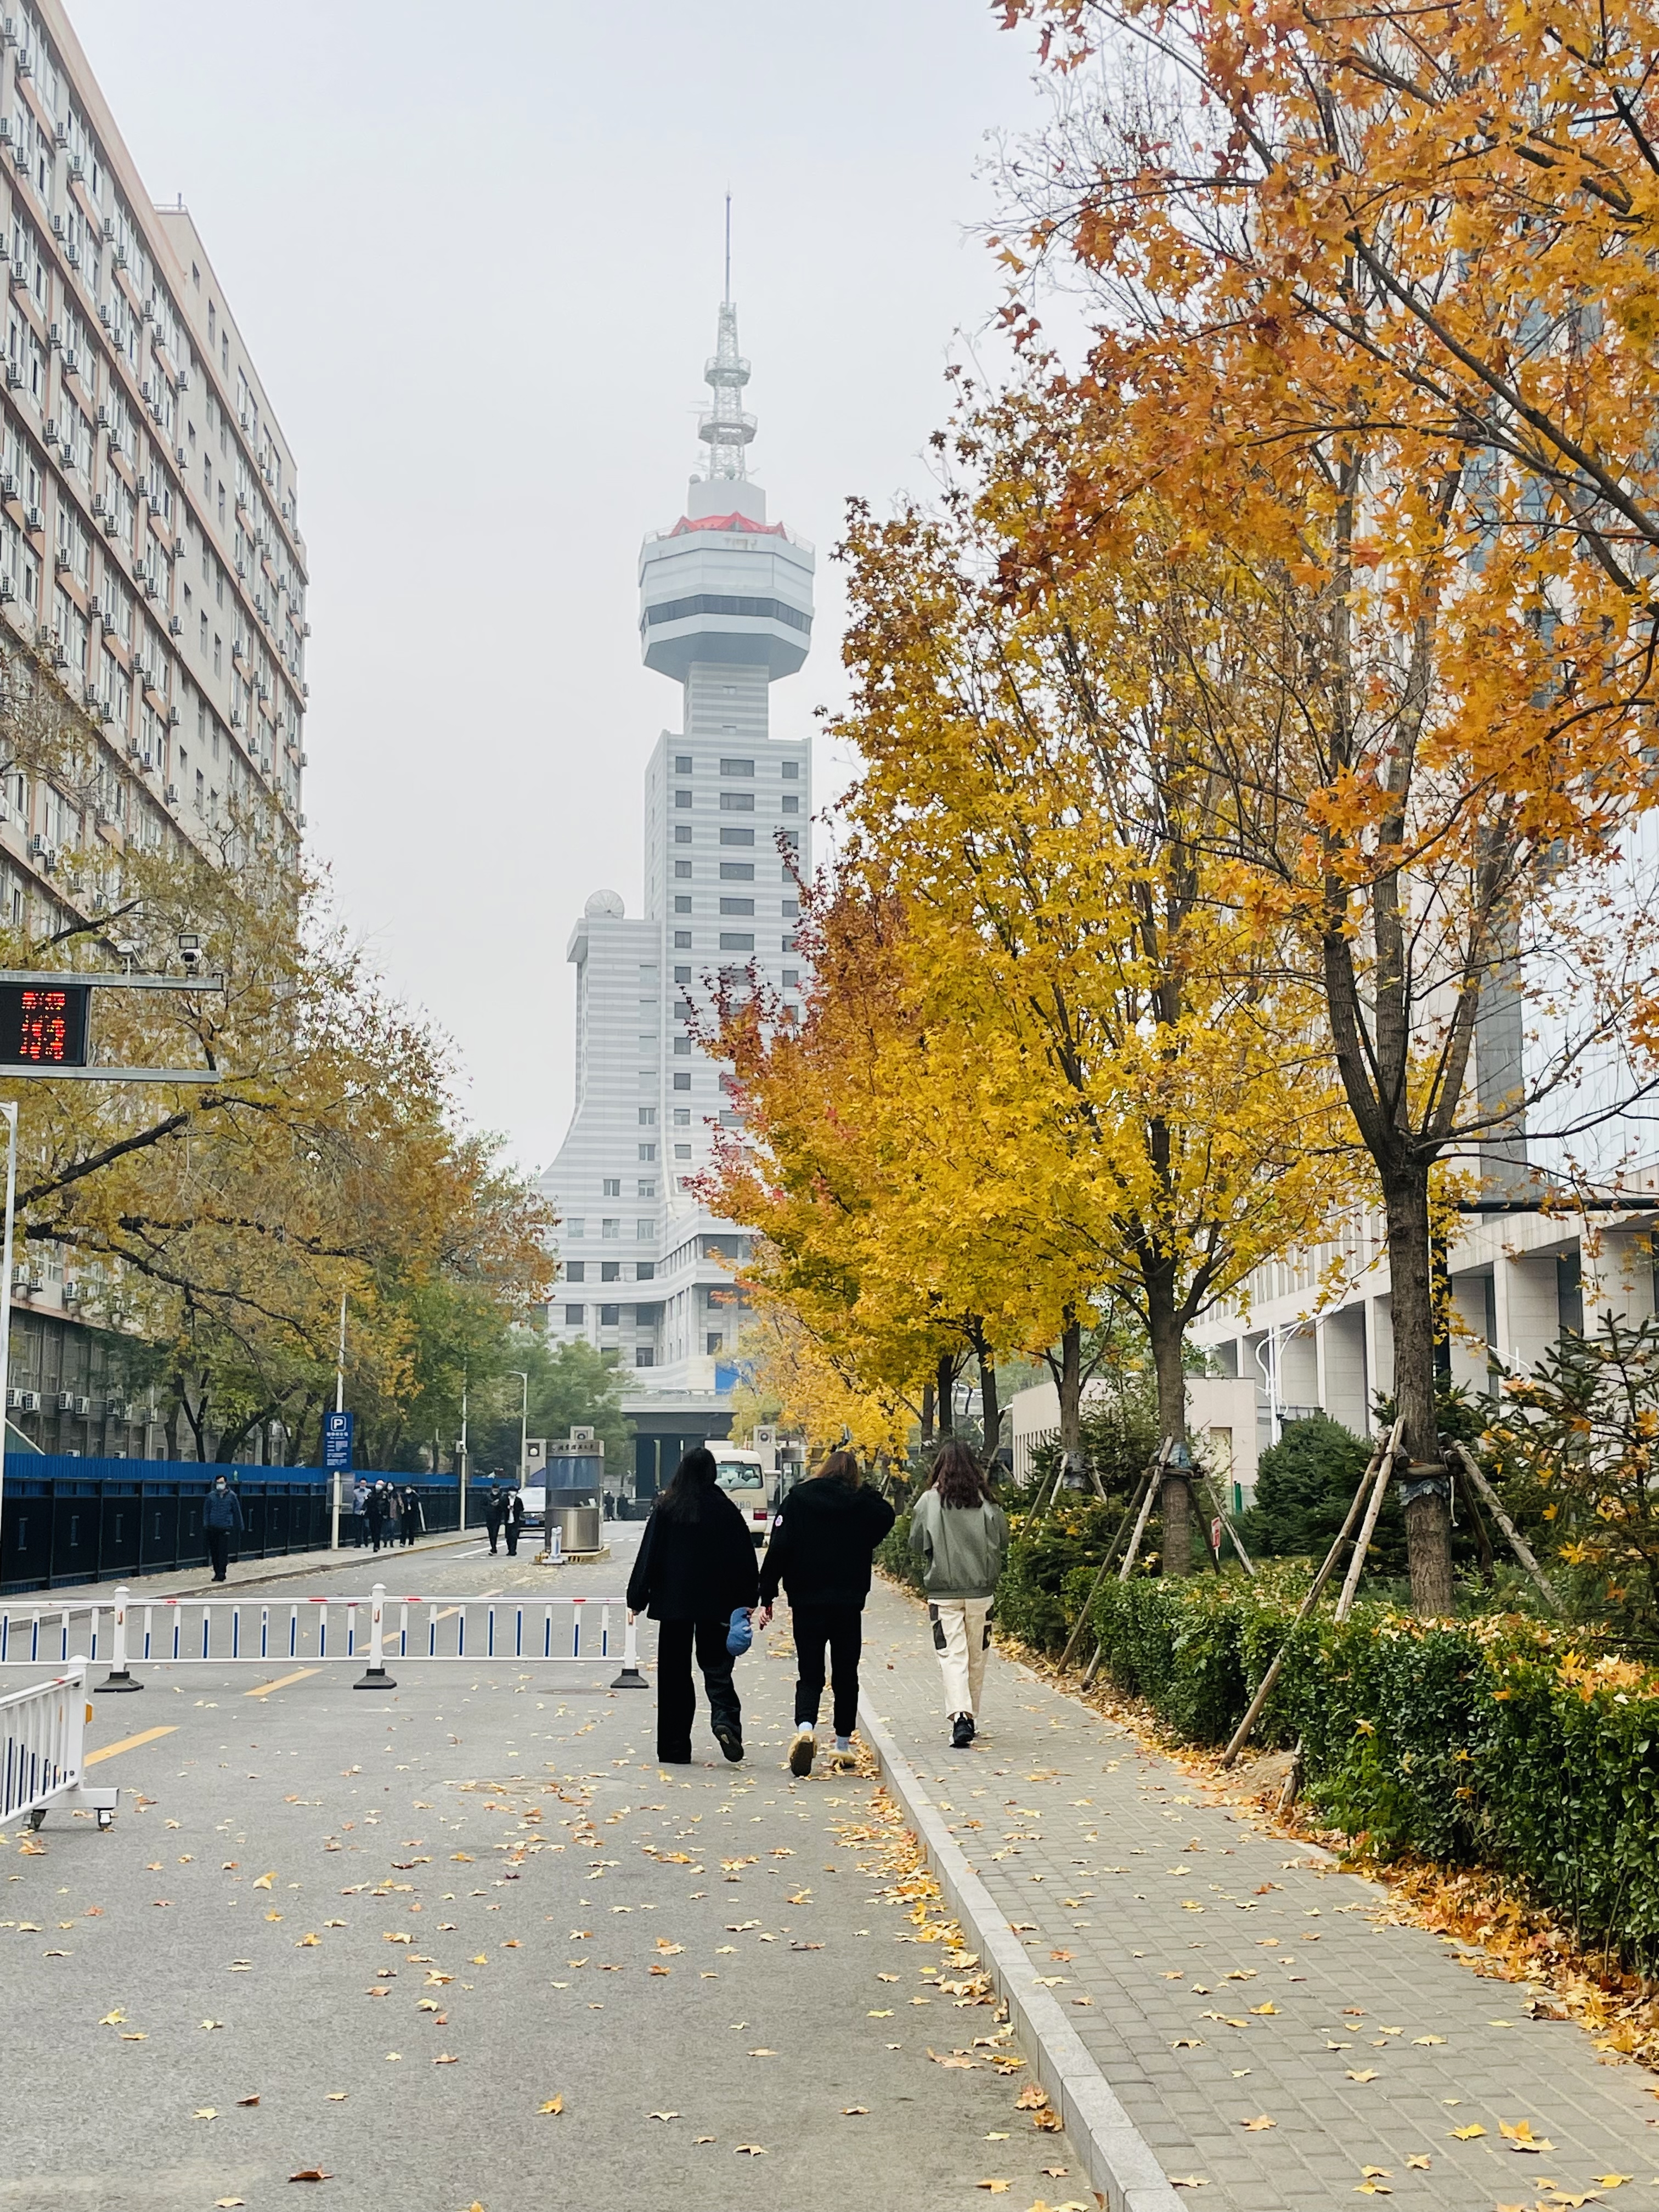 2022年11月18日 Jane 投稿 拍摄于北京